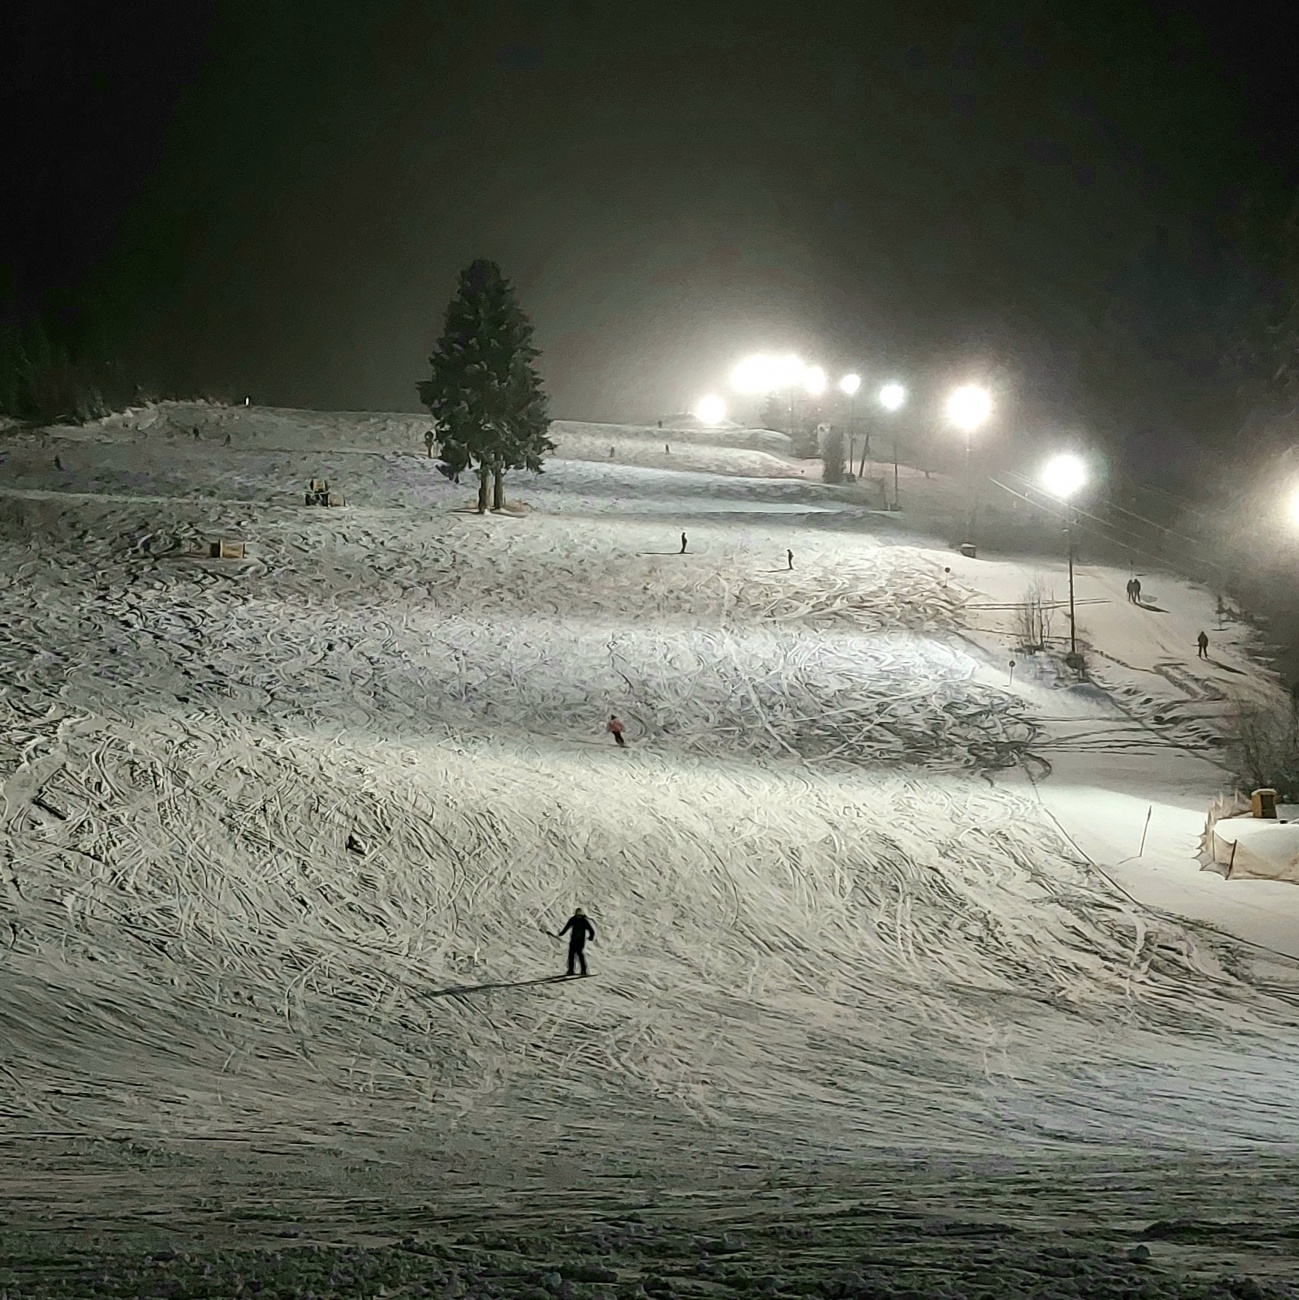 Foto: Martin Zehrer - Ski-Lift Mehlmeisel im Schneerausch...<br />
<br />
Montag, 31. Januar 2022 